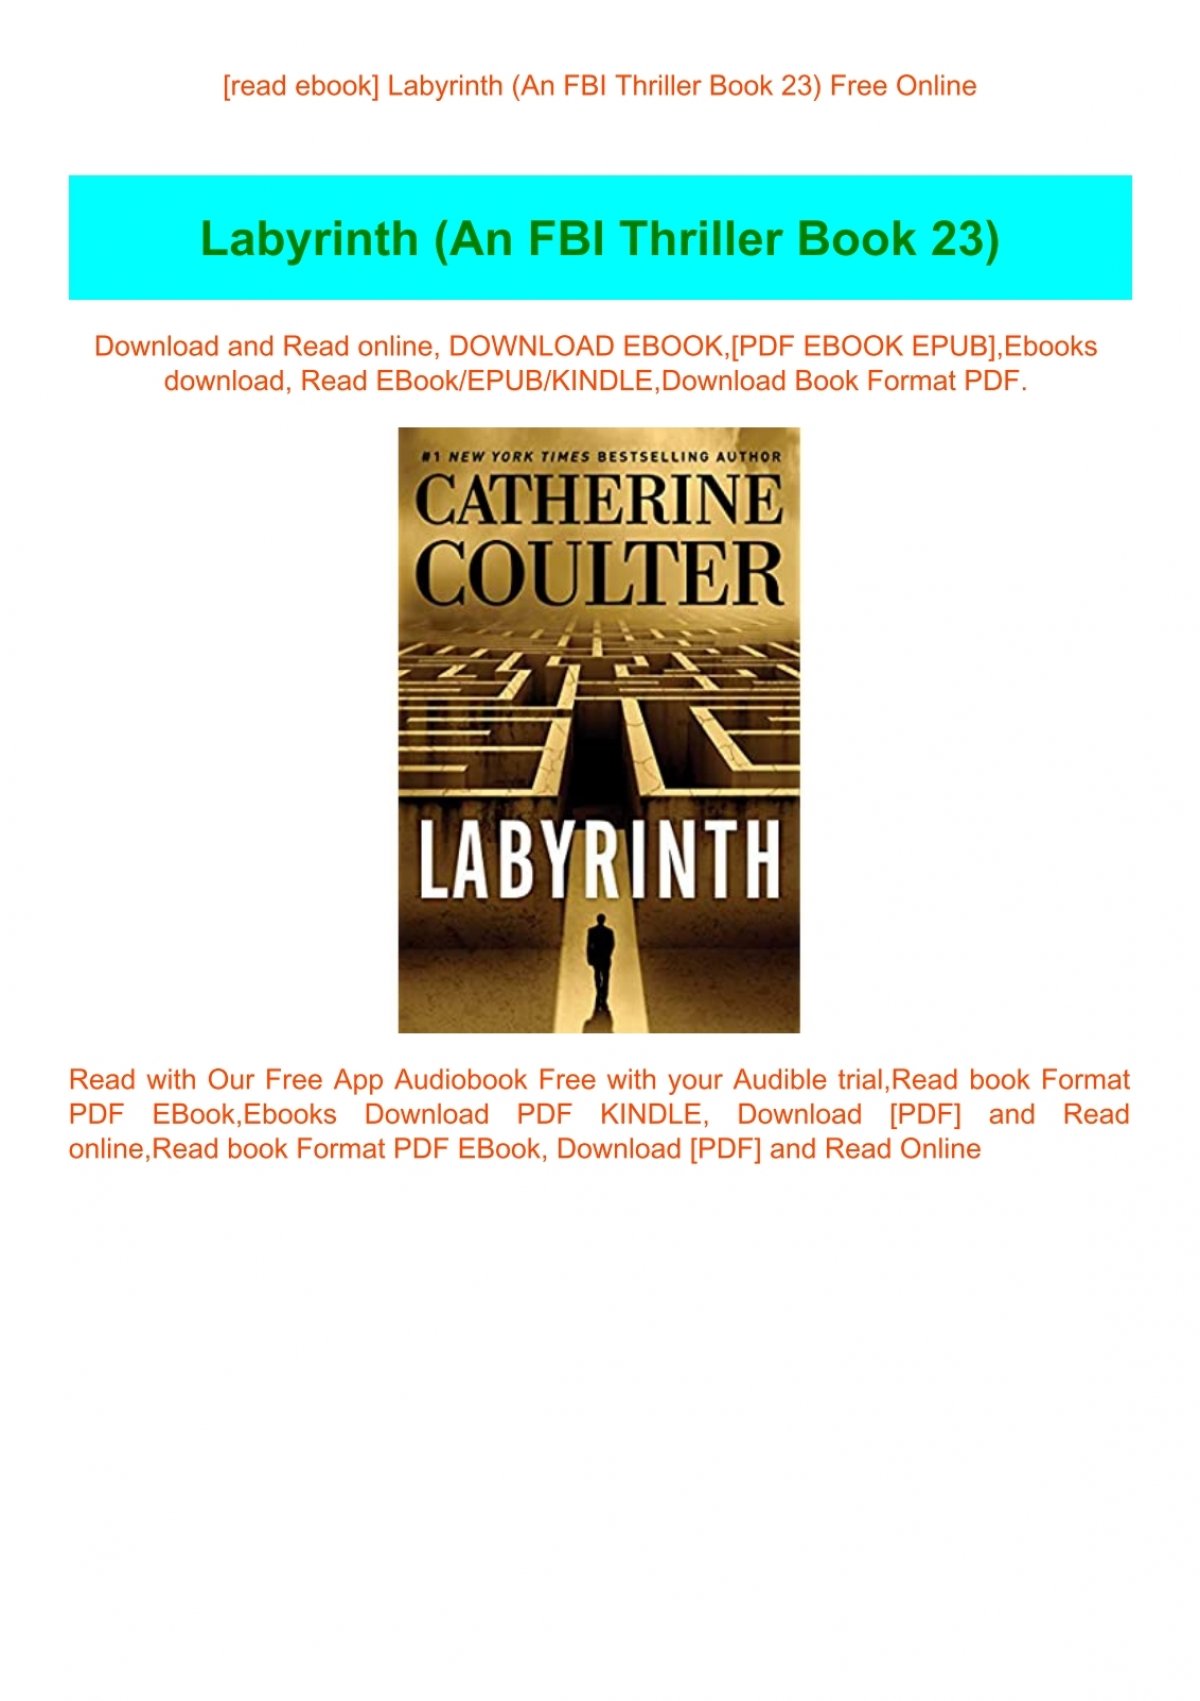 Read Ebook Labyrinth An Fbi Thriller Book 23 Free Online